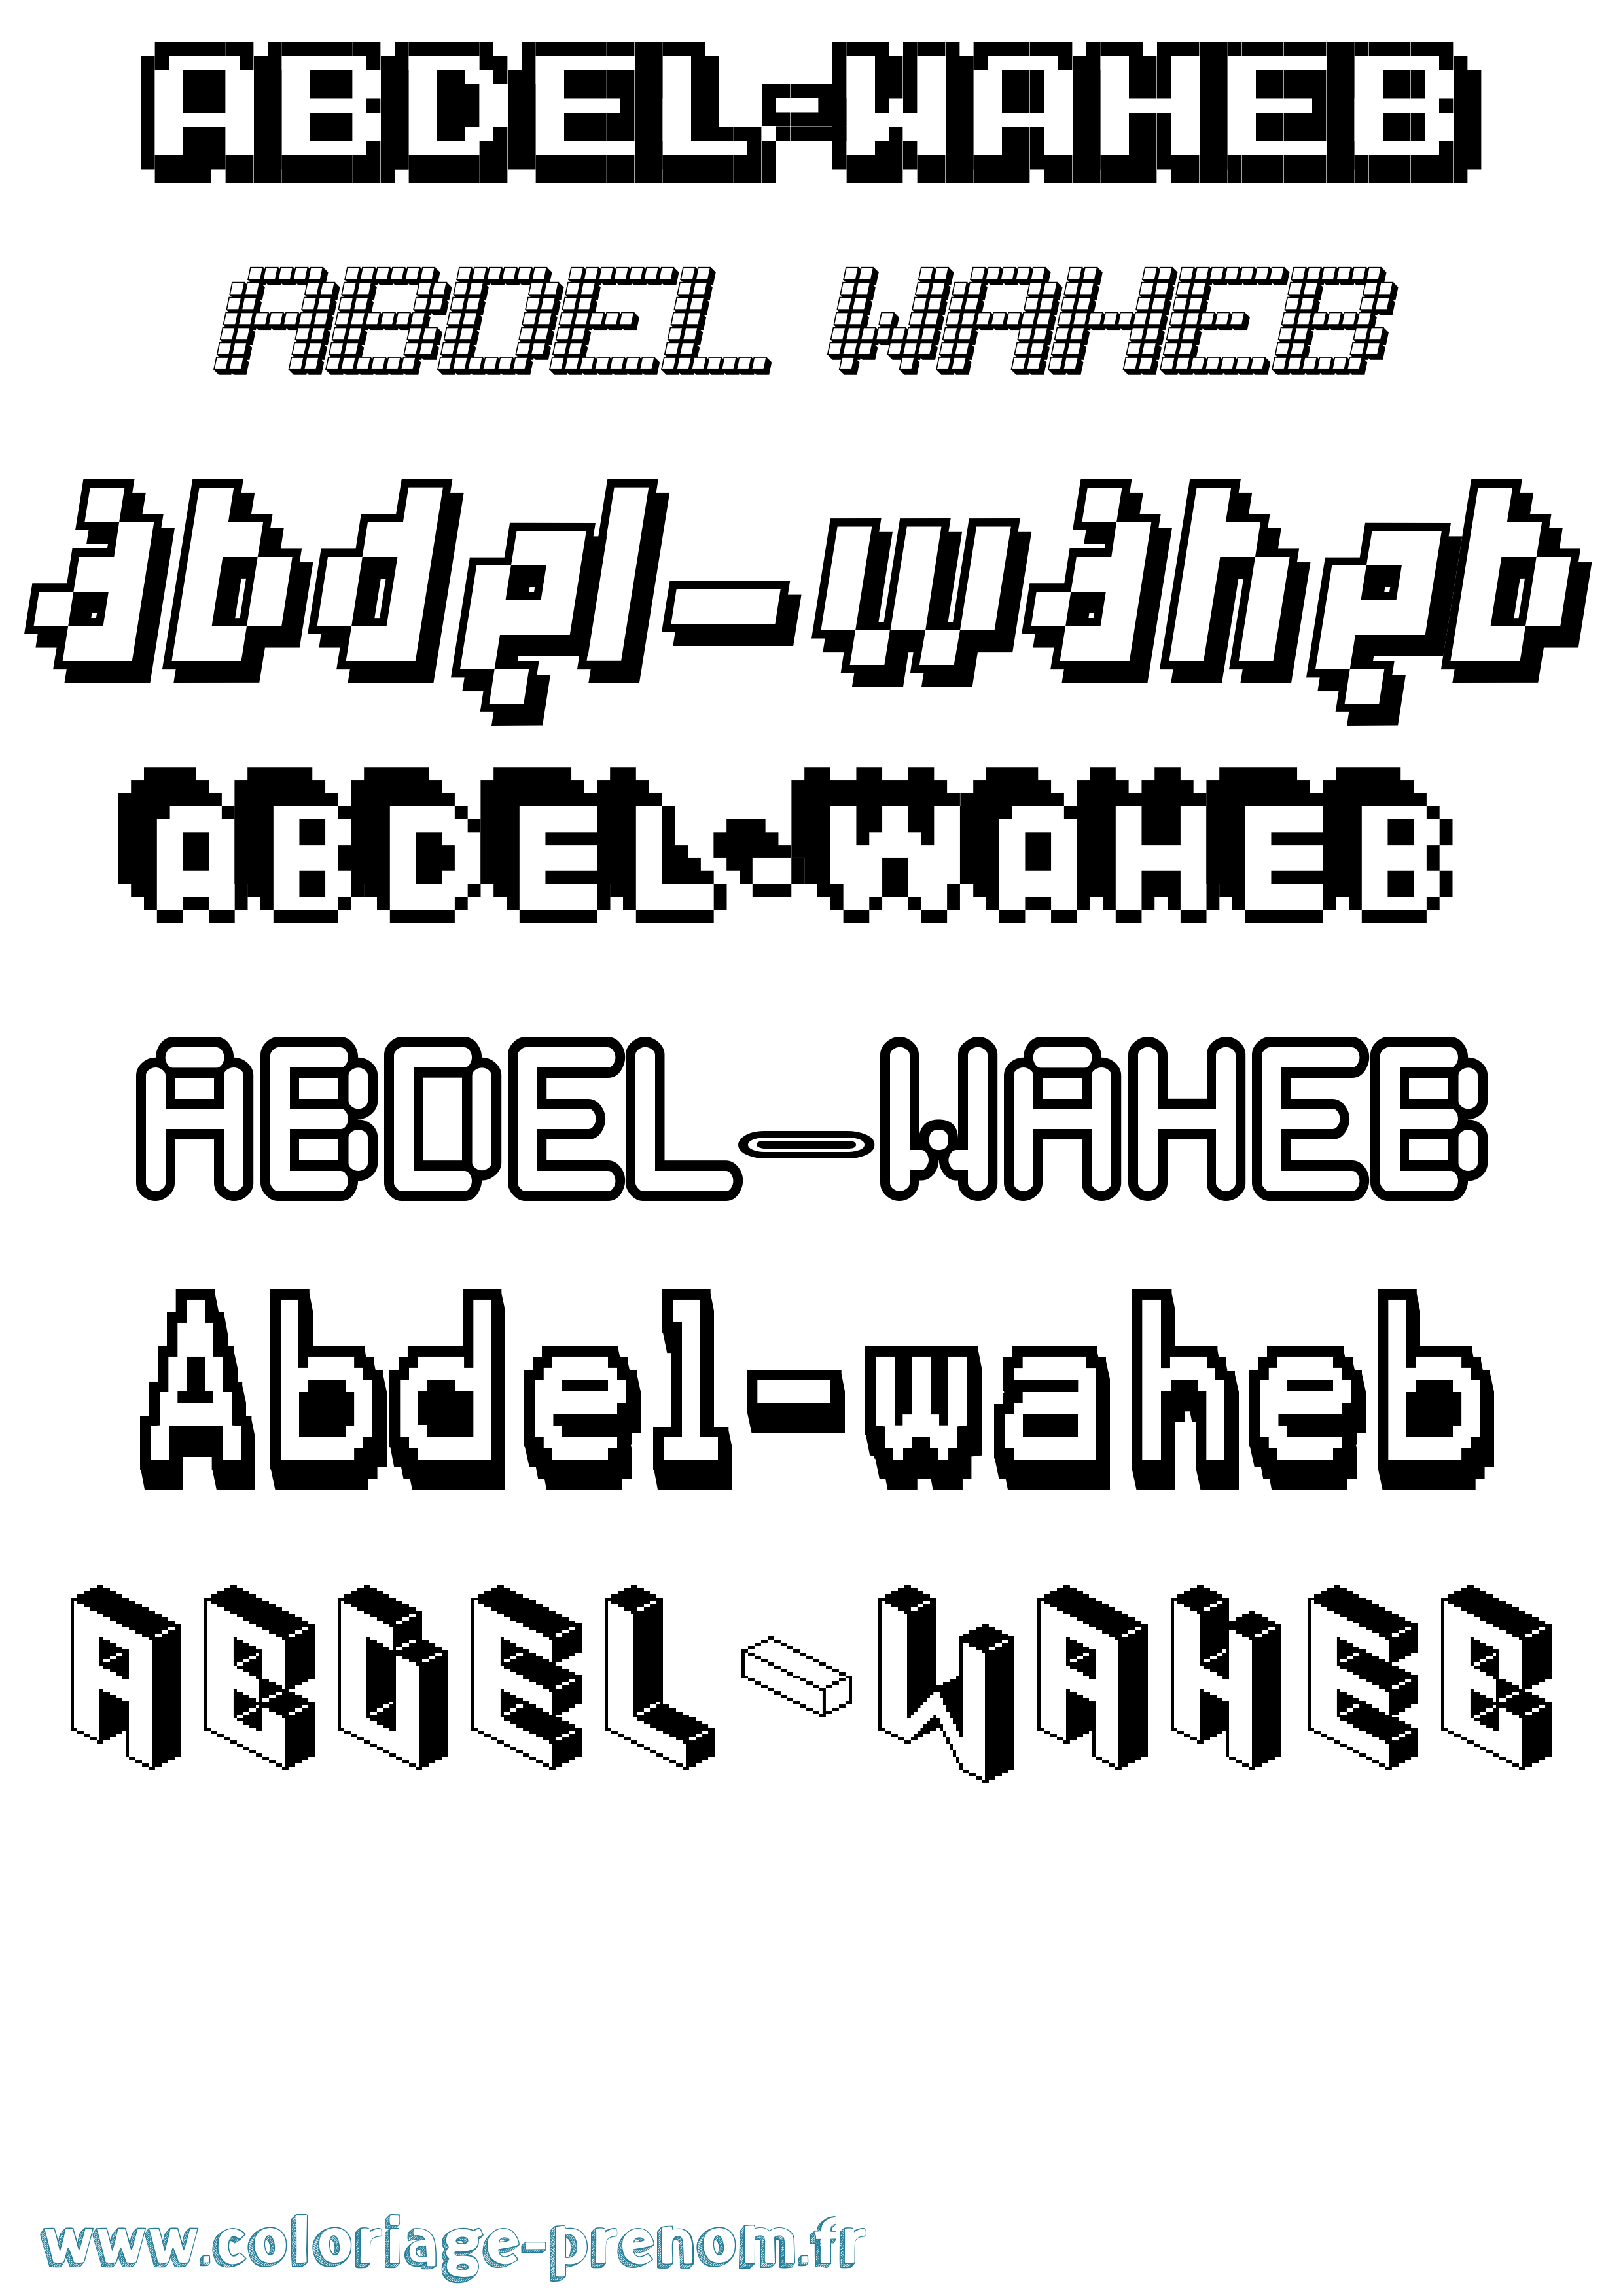 Coloriage prénom Abdel-Waheb Pixel